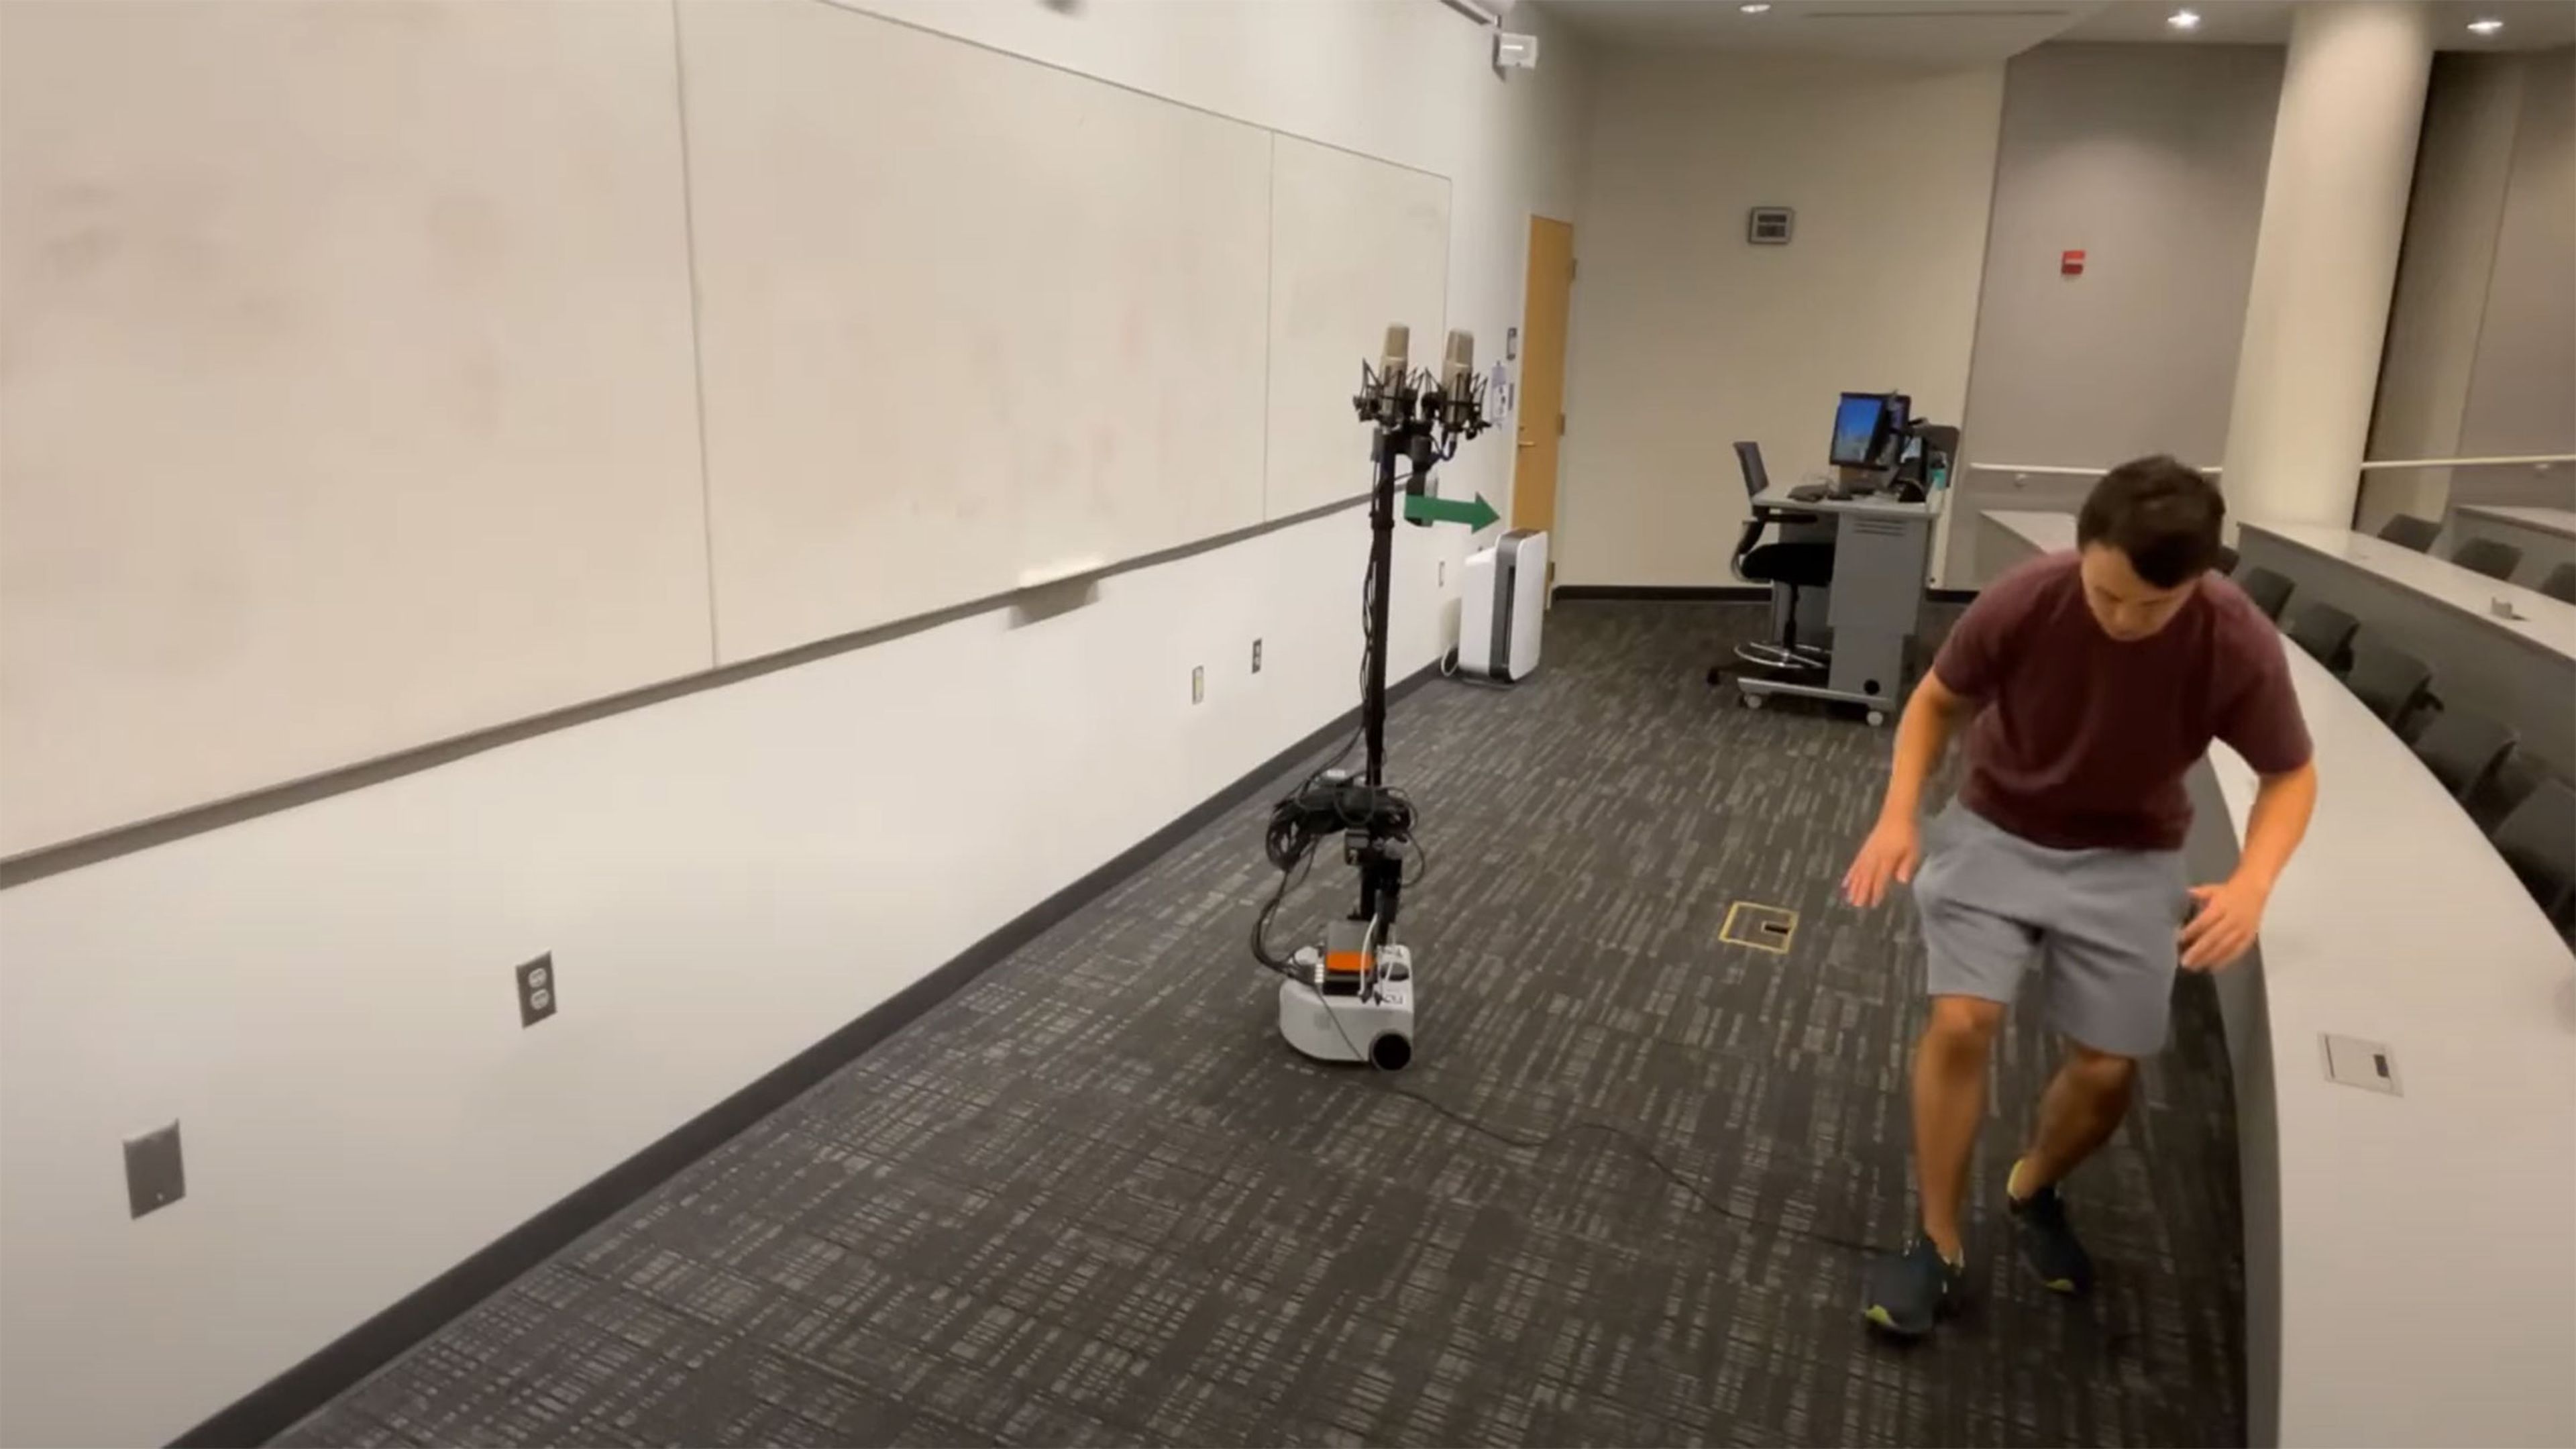 Fabrican un robot capaz de detectar ruidos sutiles para localizar a seres humanos cercanos